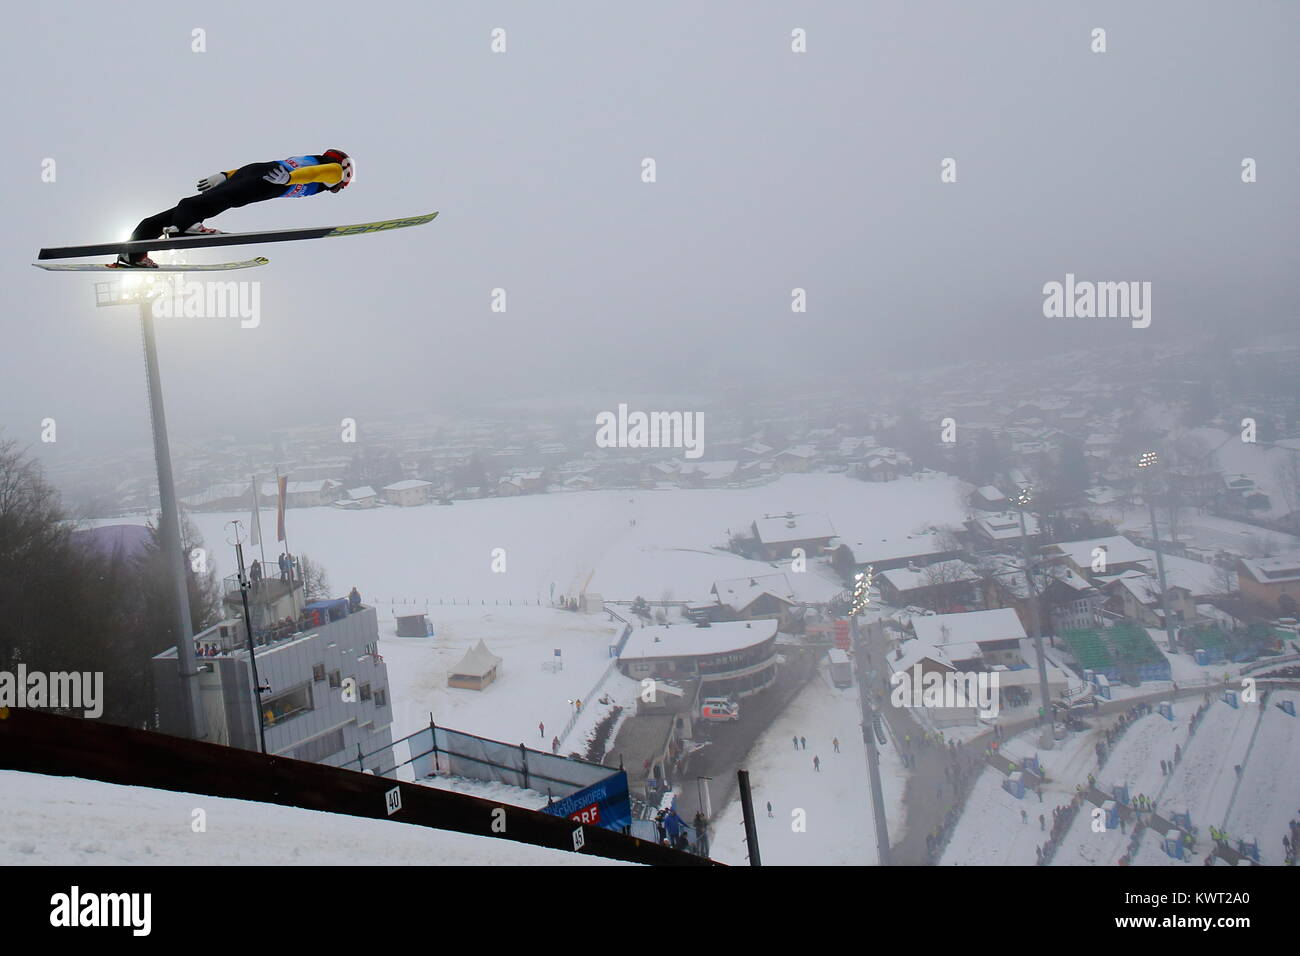 Bischofshofen, Austria. 05th, Jan, 2018. Vassiliv Dimitry dalla Russia compete durante un salto di formazione il giorno 7 del 66 quattro colli ski jumping nel torneo di Bischofshofen, Austria, 05 gennaio 2018. (Foto) Alejandro Sala/Alamy Live News Foto Stock